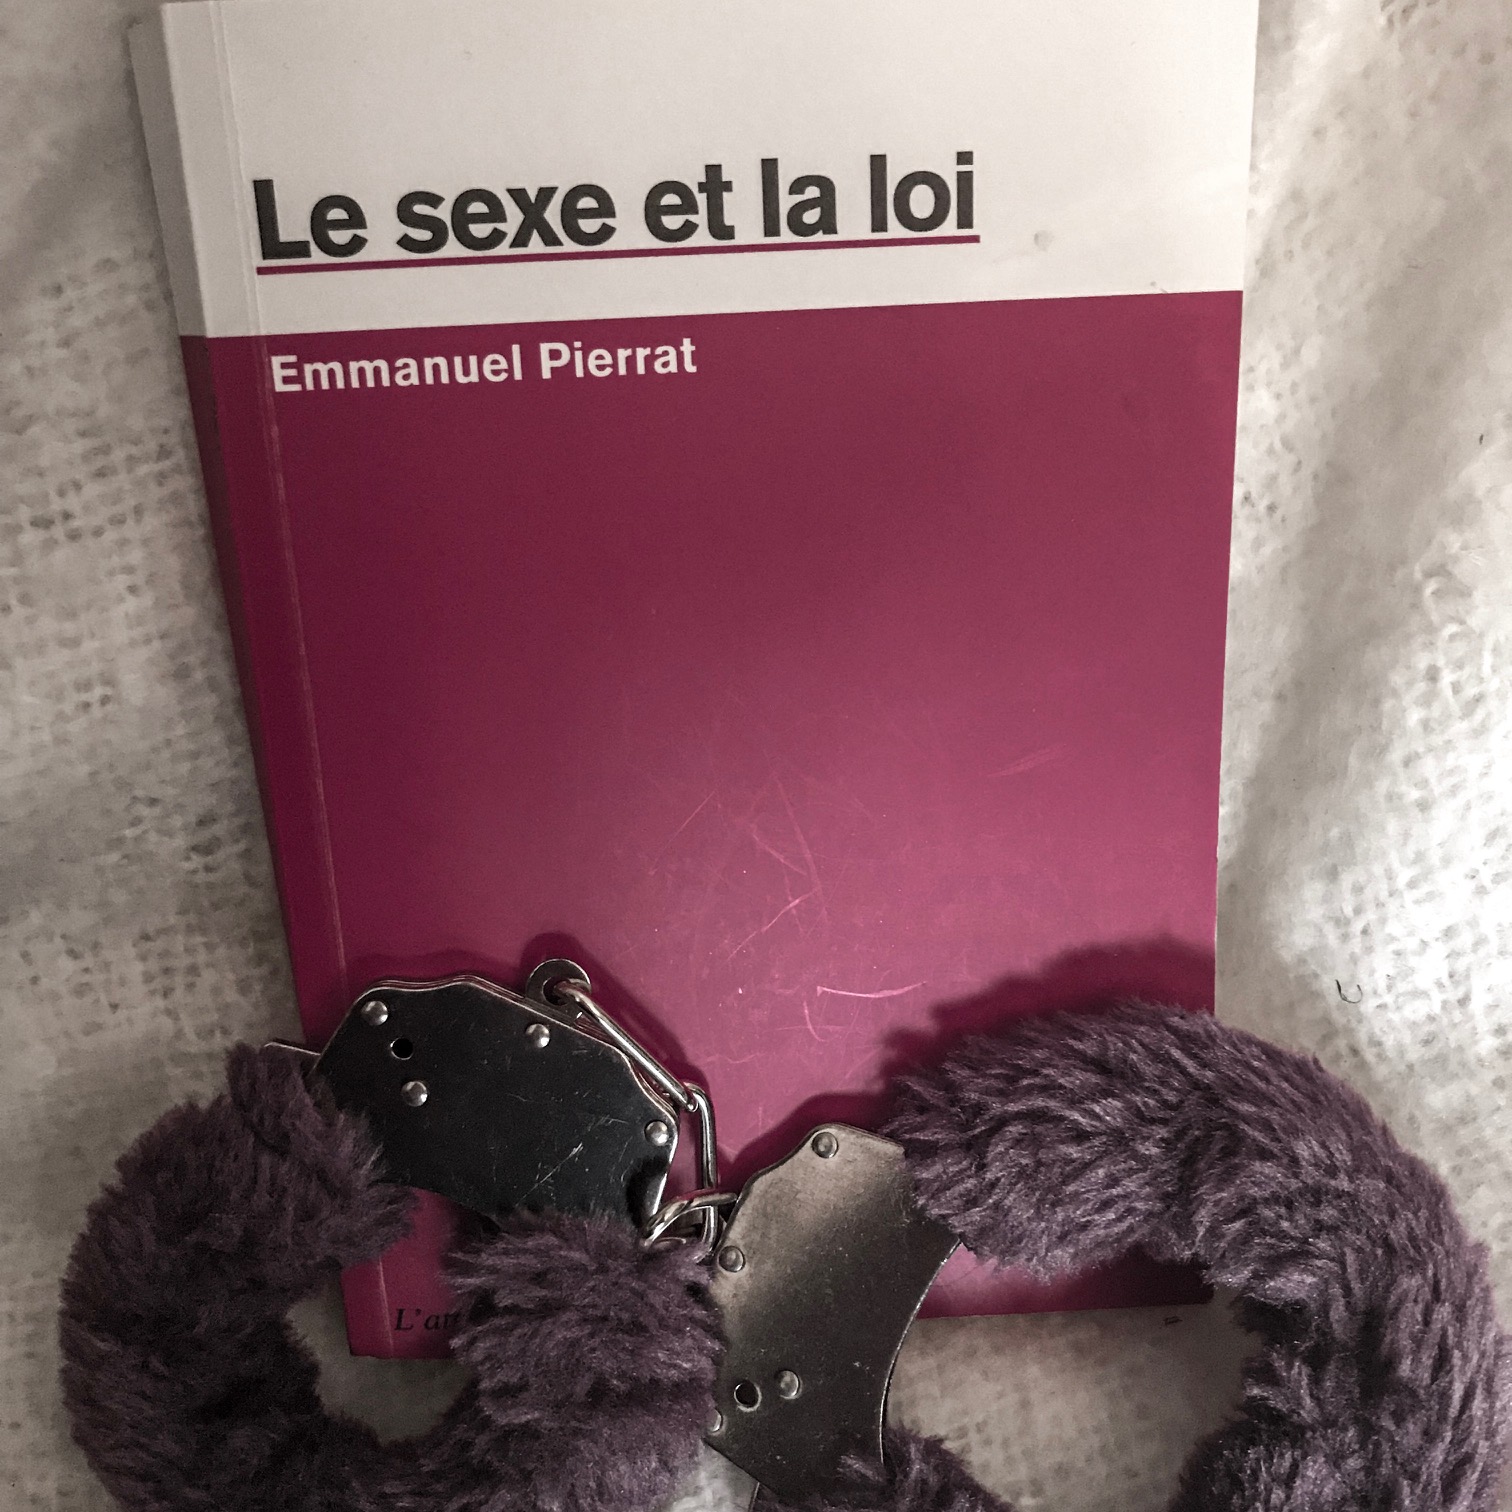 Le sexe et la loi, d'Emmanuel Pierrat : de bien troubles rapports